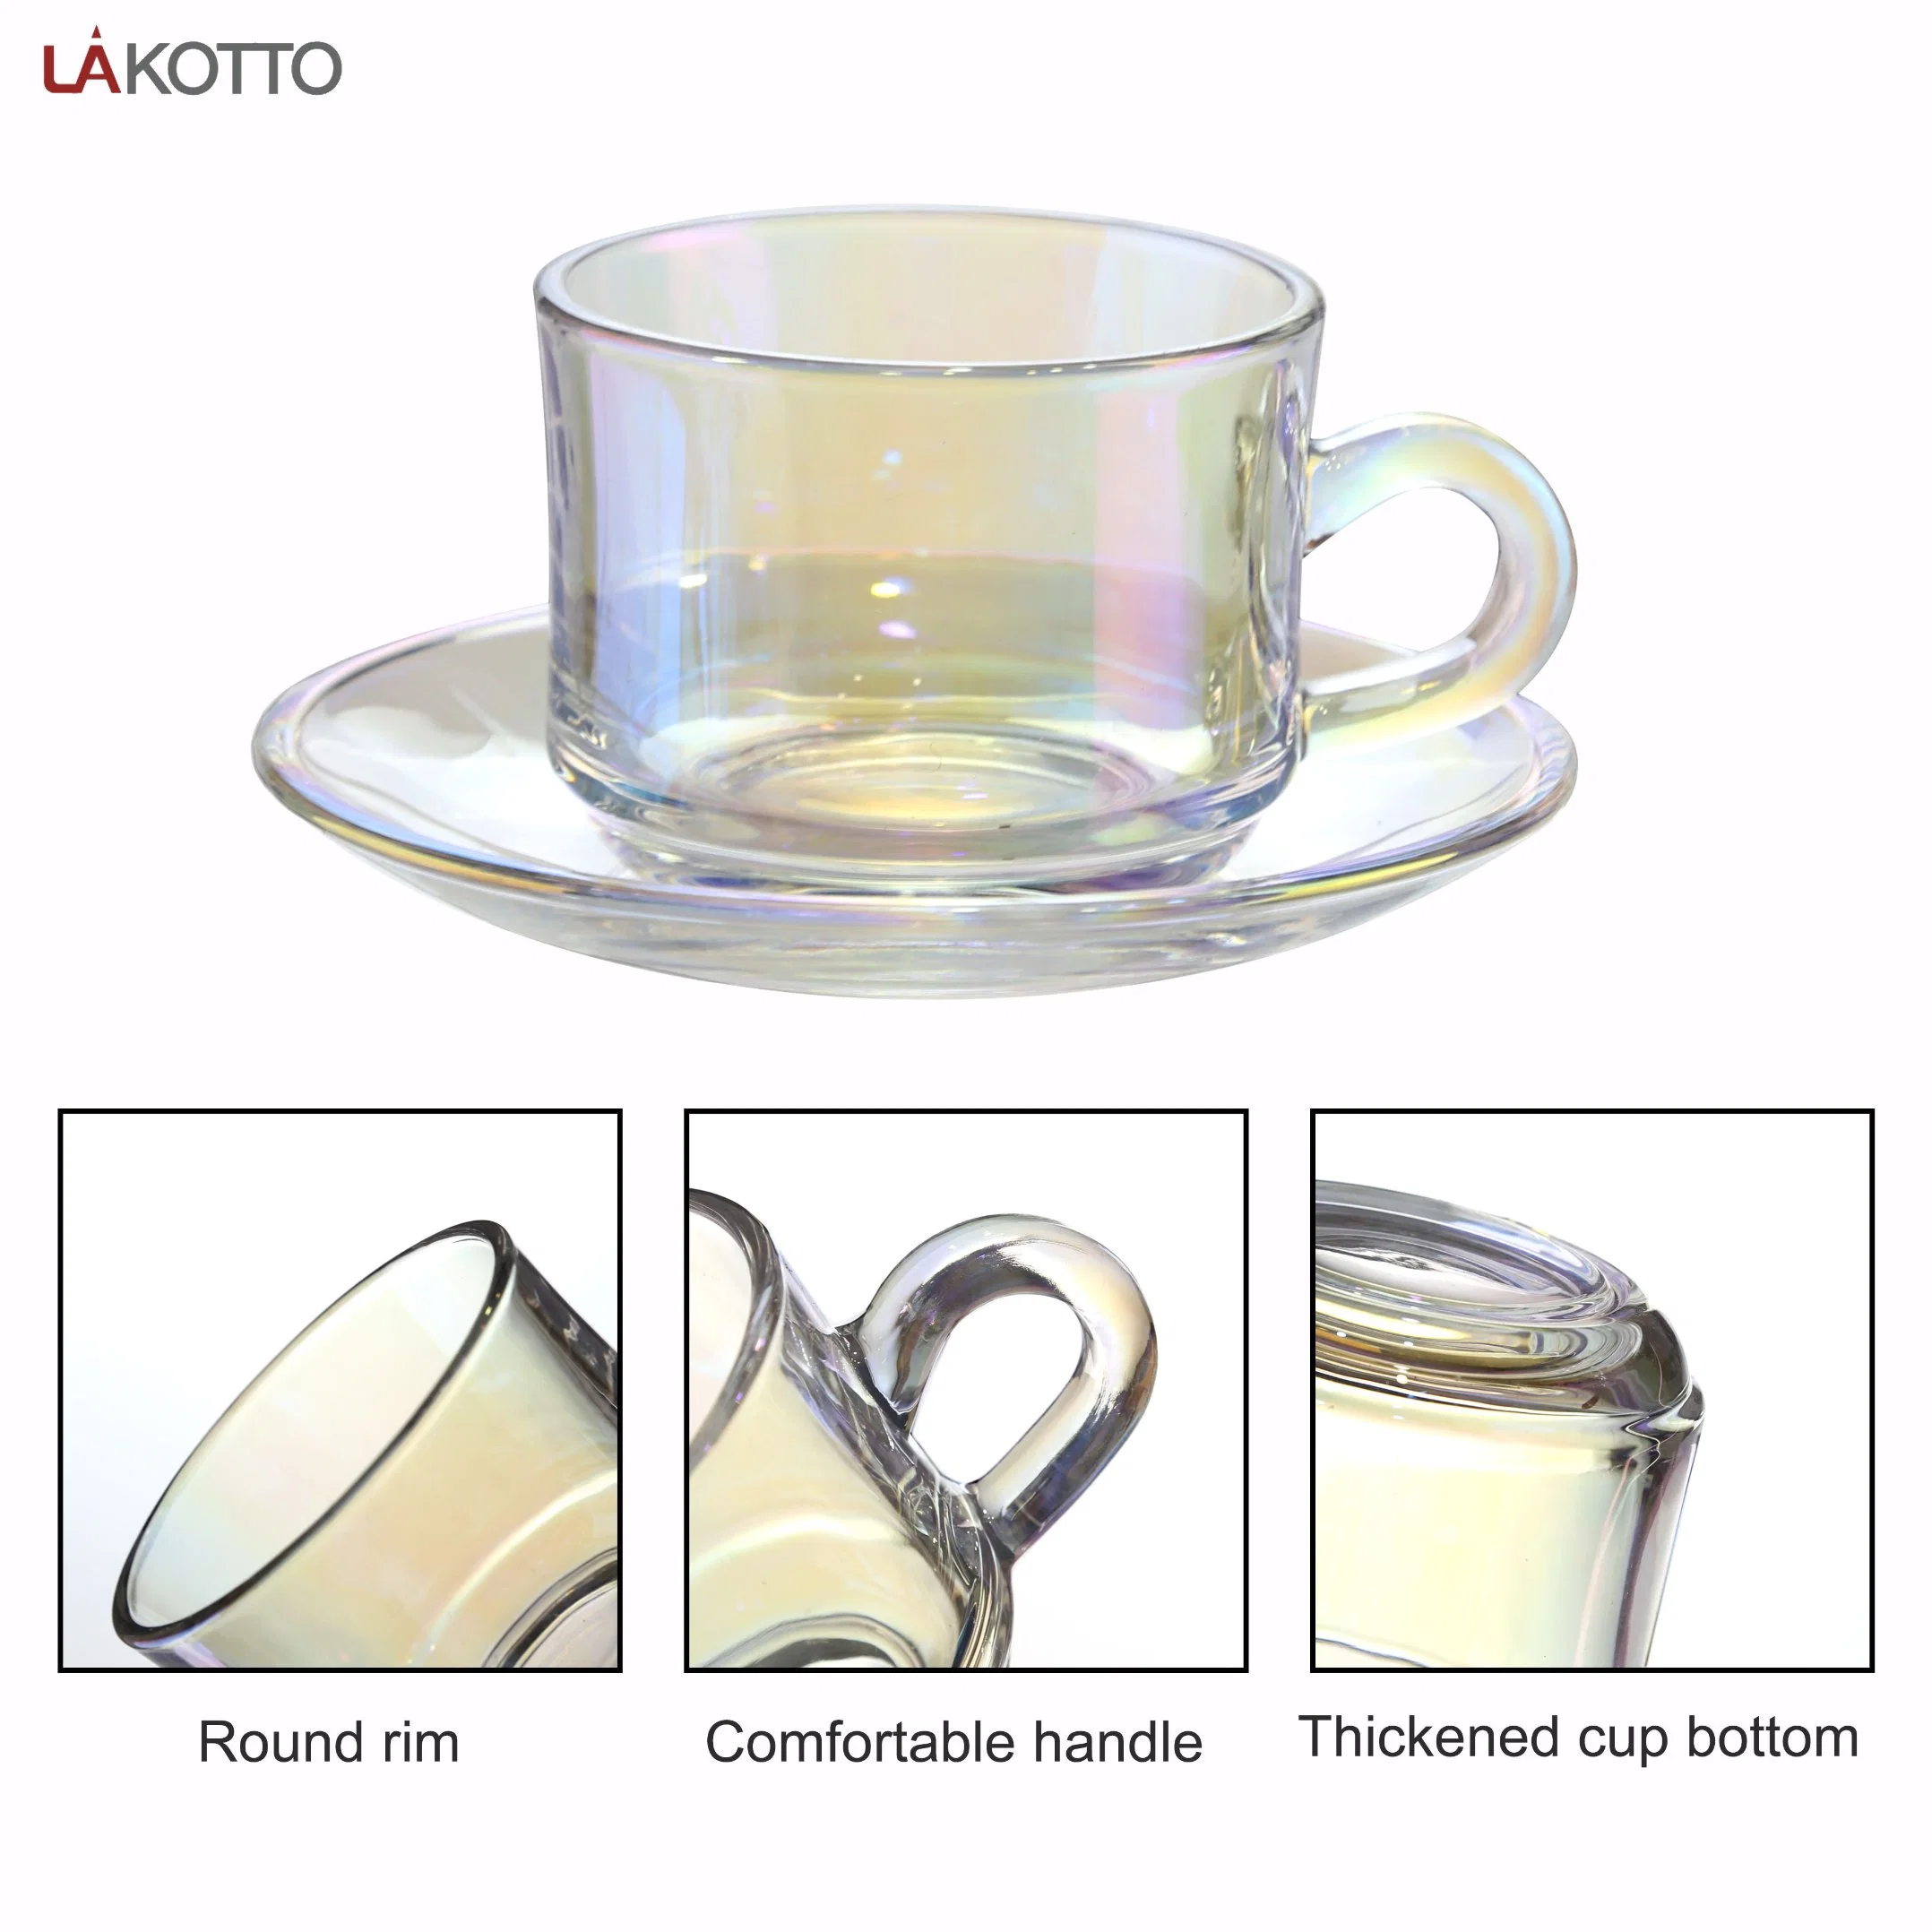 Nuevo Lakotto Oficina de vidrio cristalería té café secadora Vasos Taza Mug